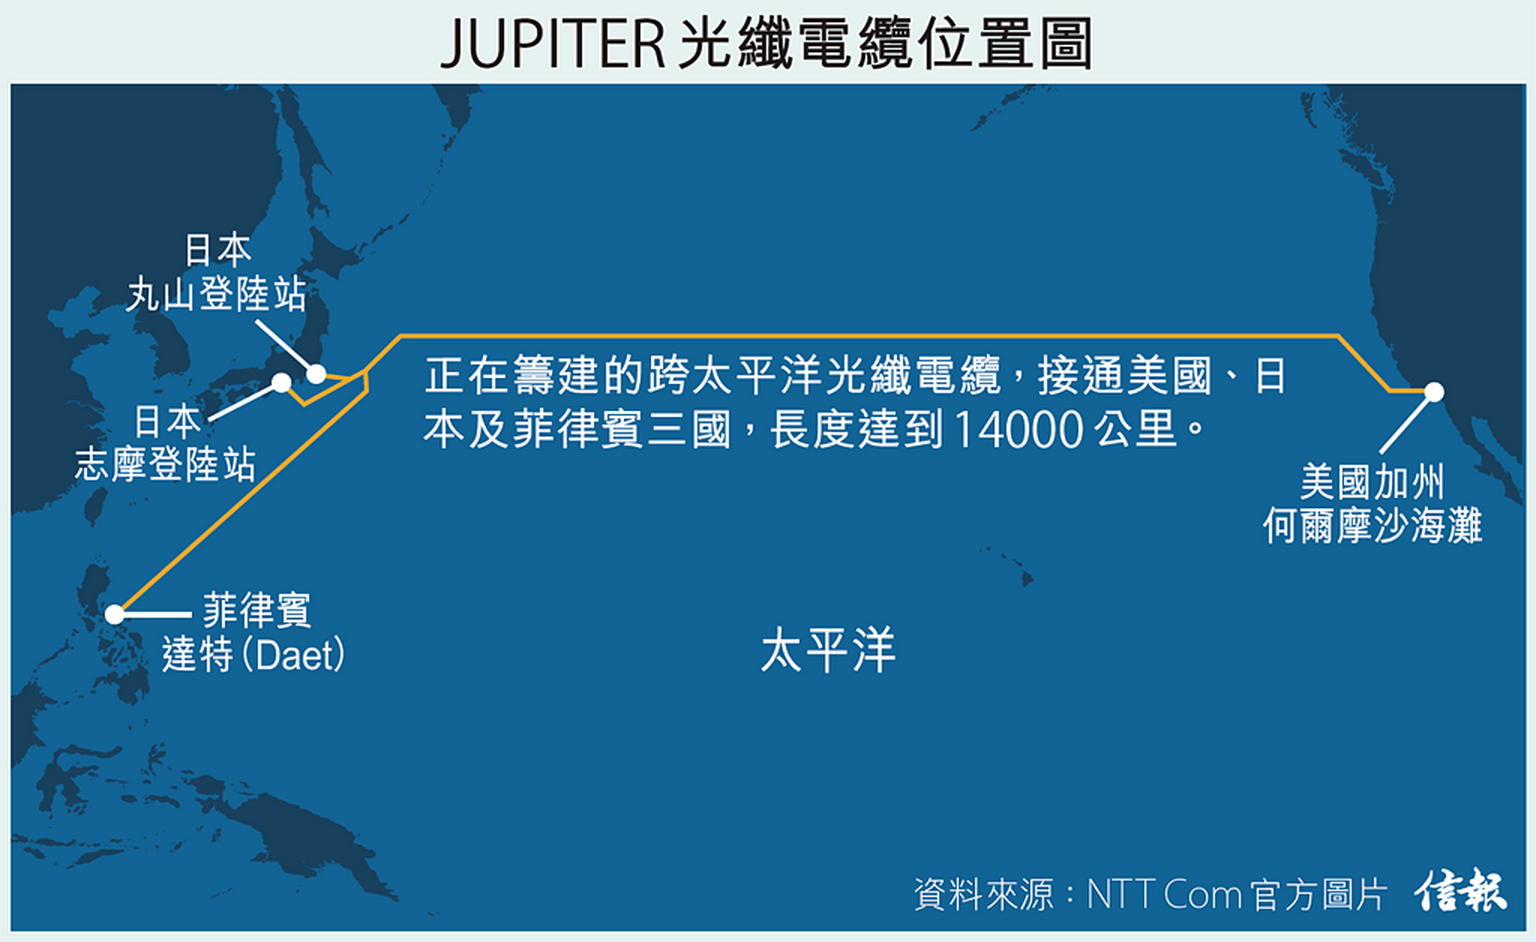 海底電纜系統名為JUPITER，預計將於2020年初竣工，屆時網速將高達60Tbps。 （NTT Com 官方圖片）